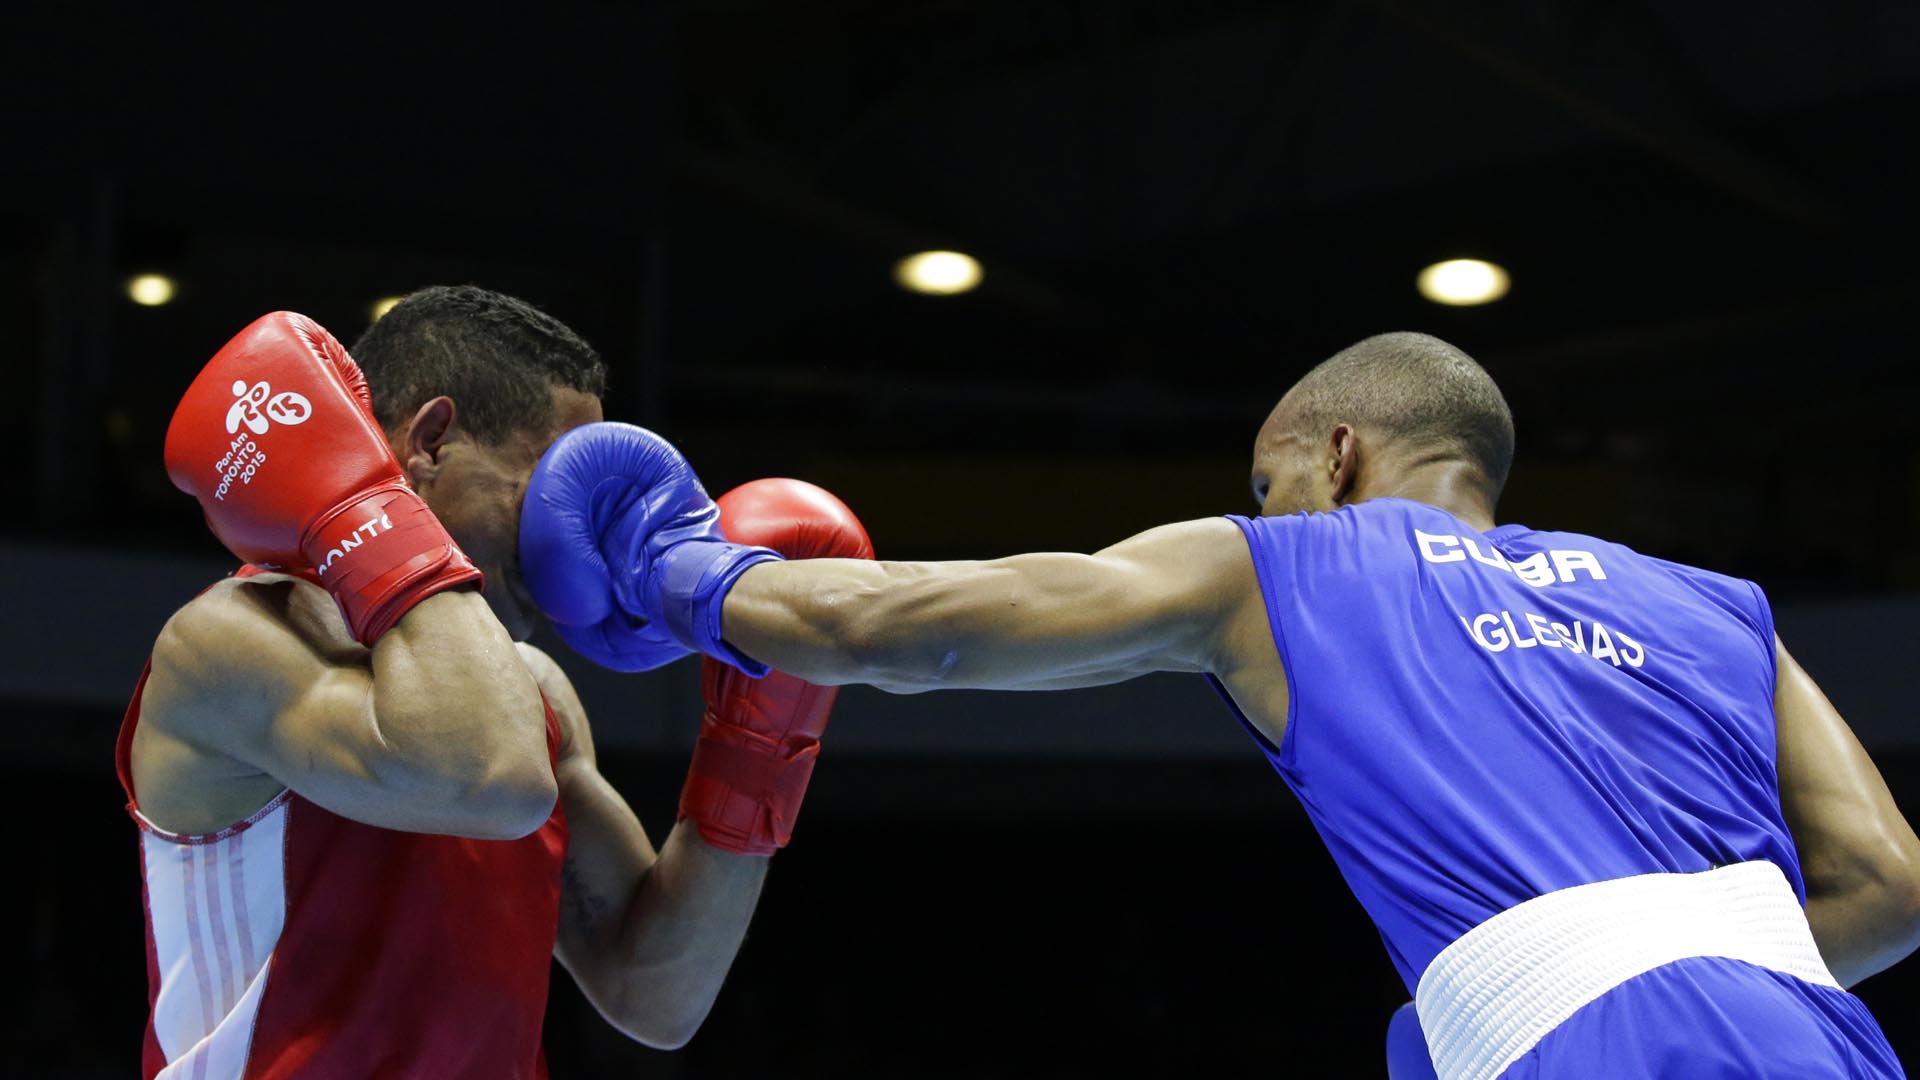 El último torneo clasificatorio para el boxeo de cara a los Juegos Olímpicos de Río 2016 está previsto para julio en Venezuela